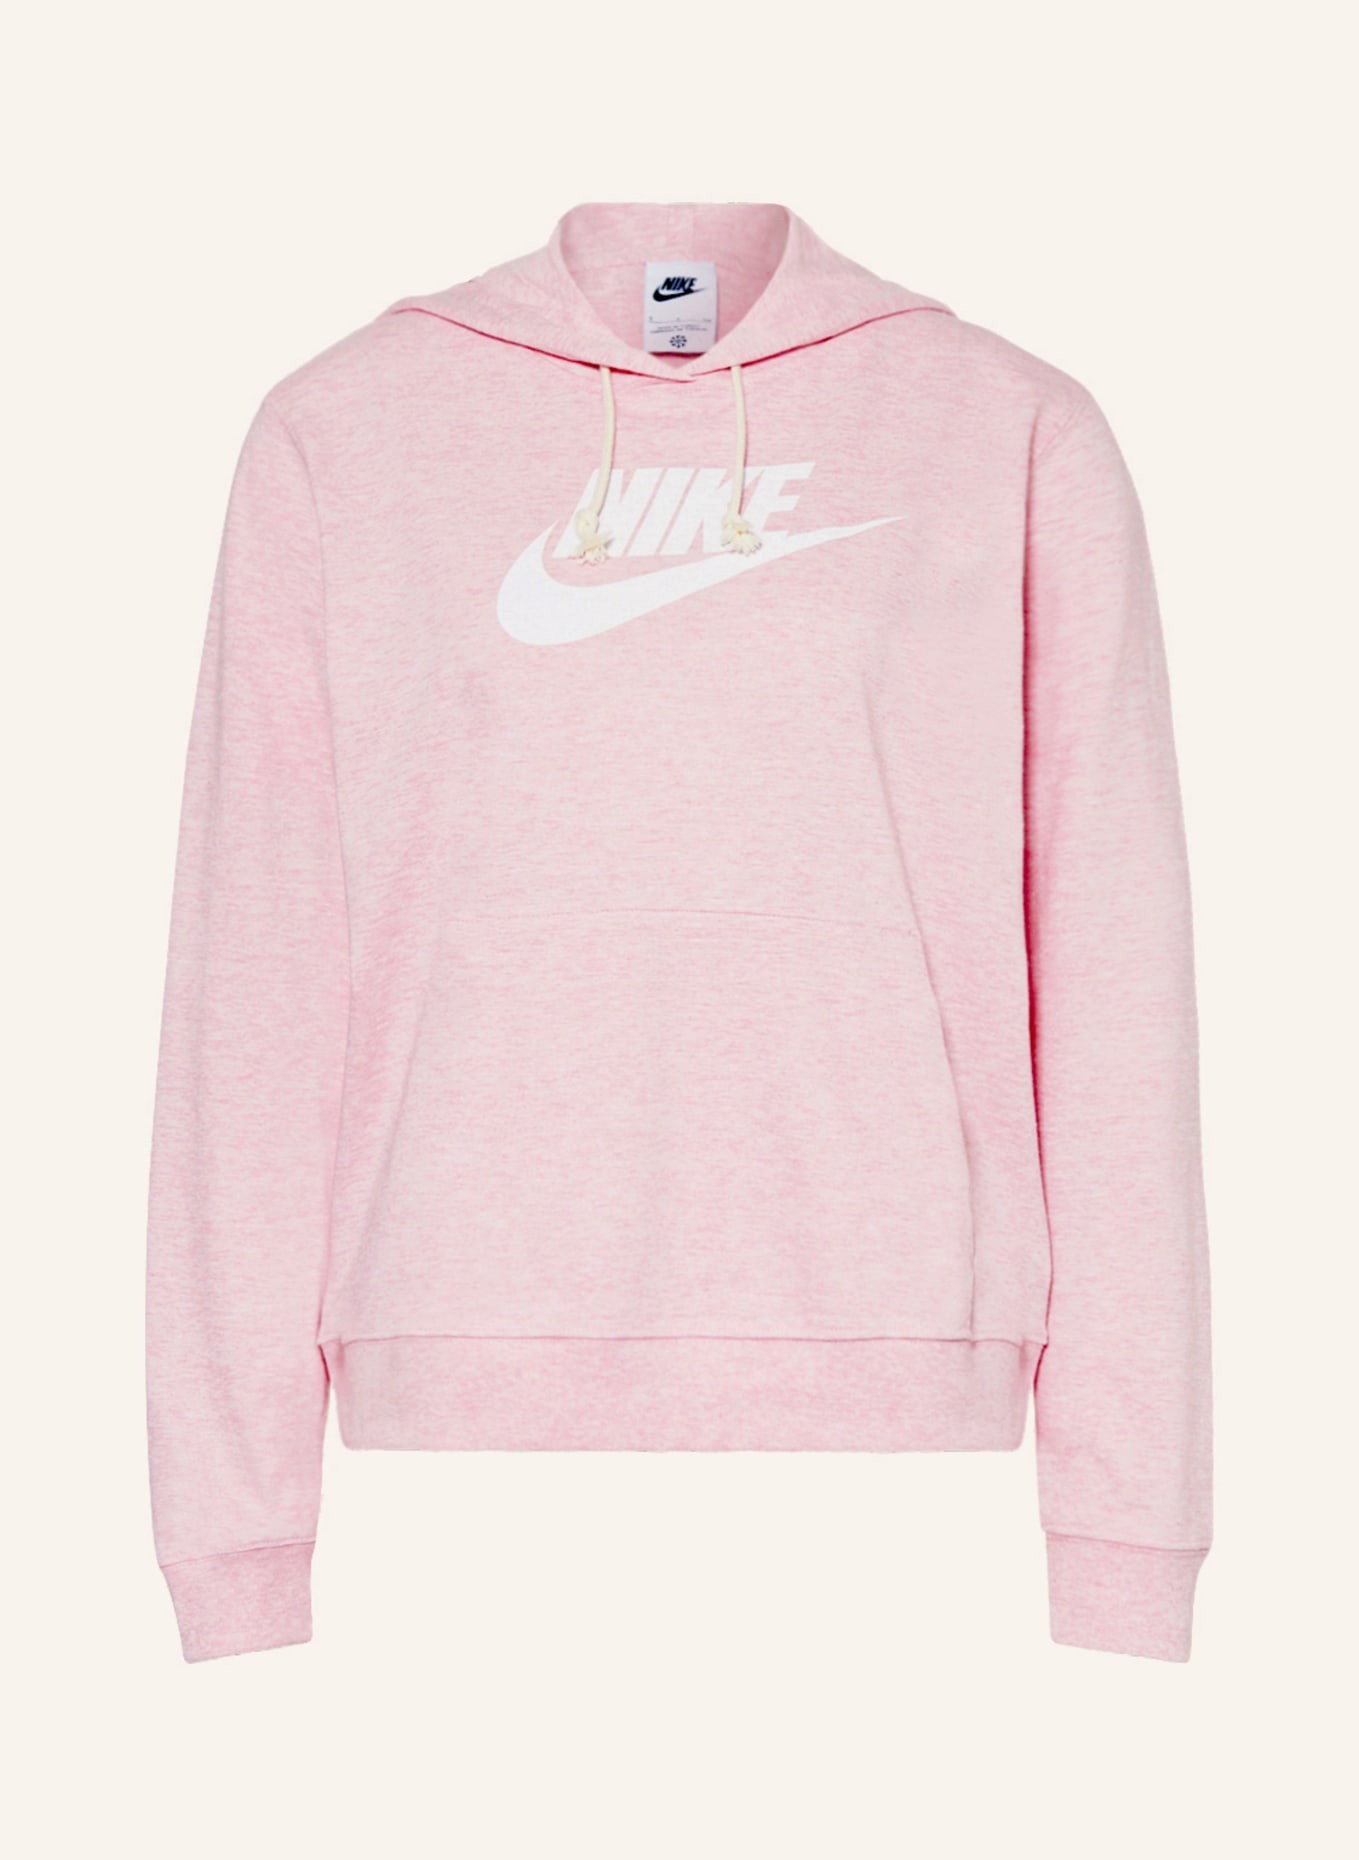 Buy Nike Sportswear Gym Vintage Hoody Women Pink, Cream online